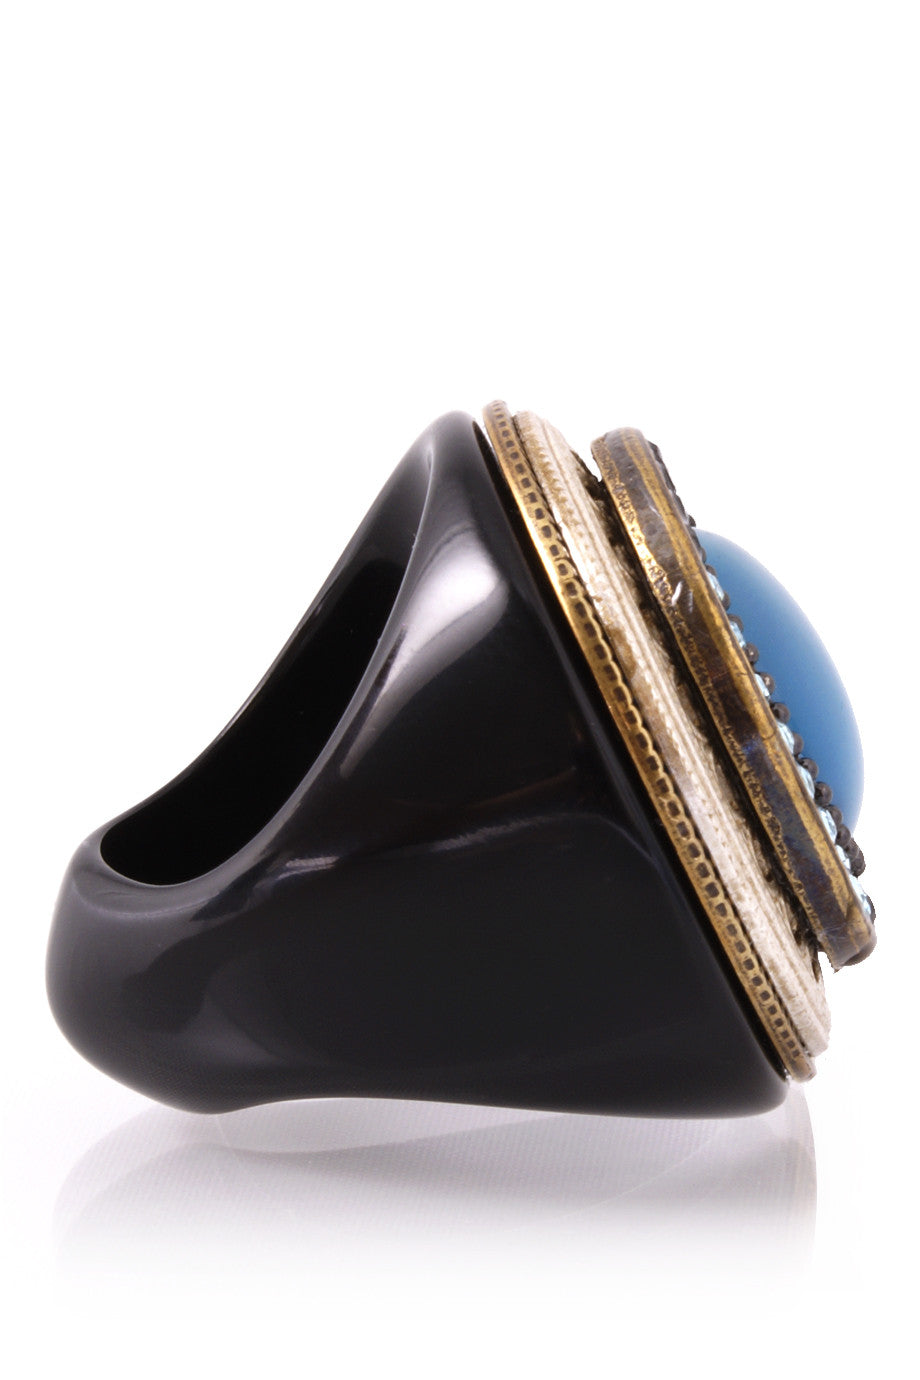 Μπλε Δακτυλίδι με Κρύσταλλα - Ringseclectic | Κοσμήματα